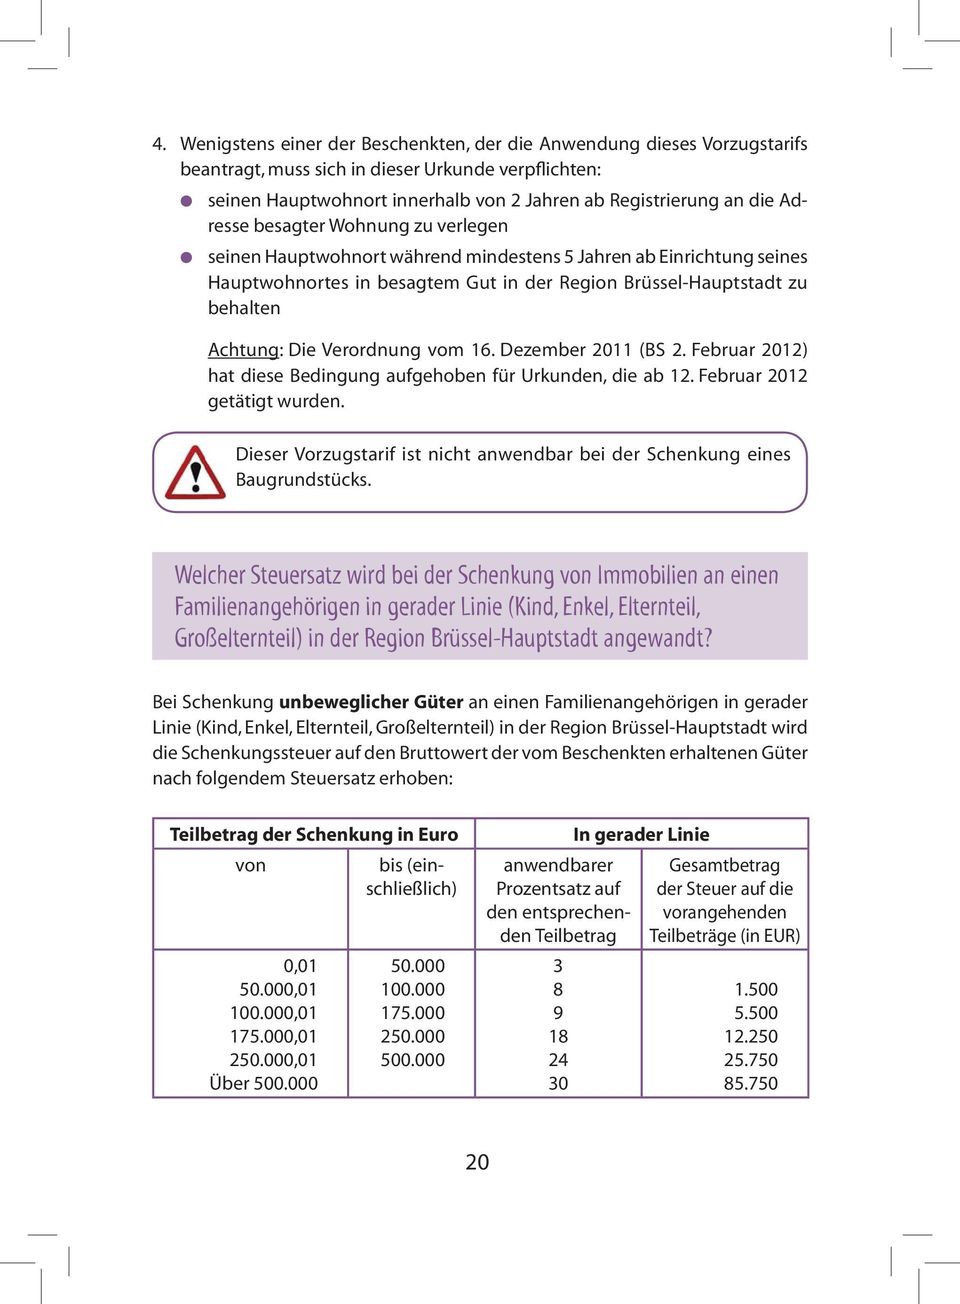 Verordnung vom 16. Dezember 2011 (BS 2. Februar 2012) hat diese Bedingung aufgehoben für Urkunden, die ab 12. Februar 2012 getätigt wurden.